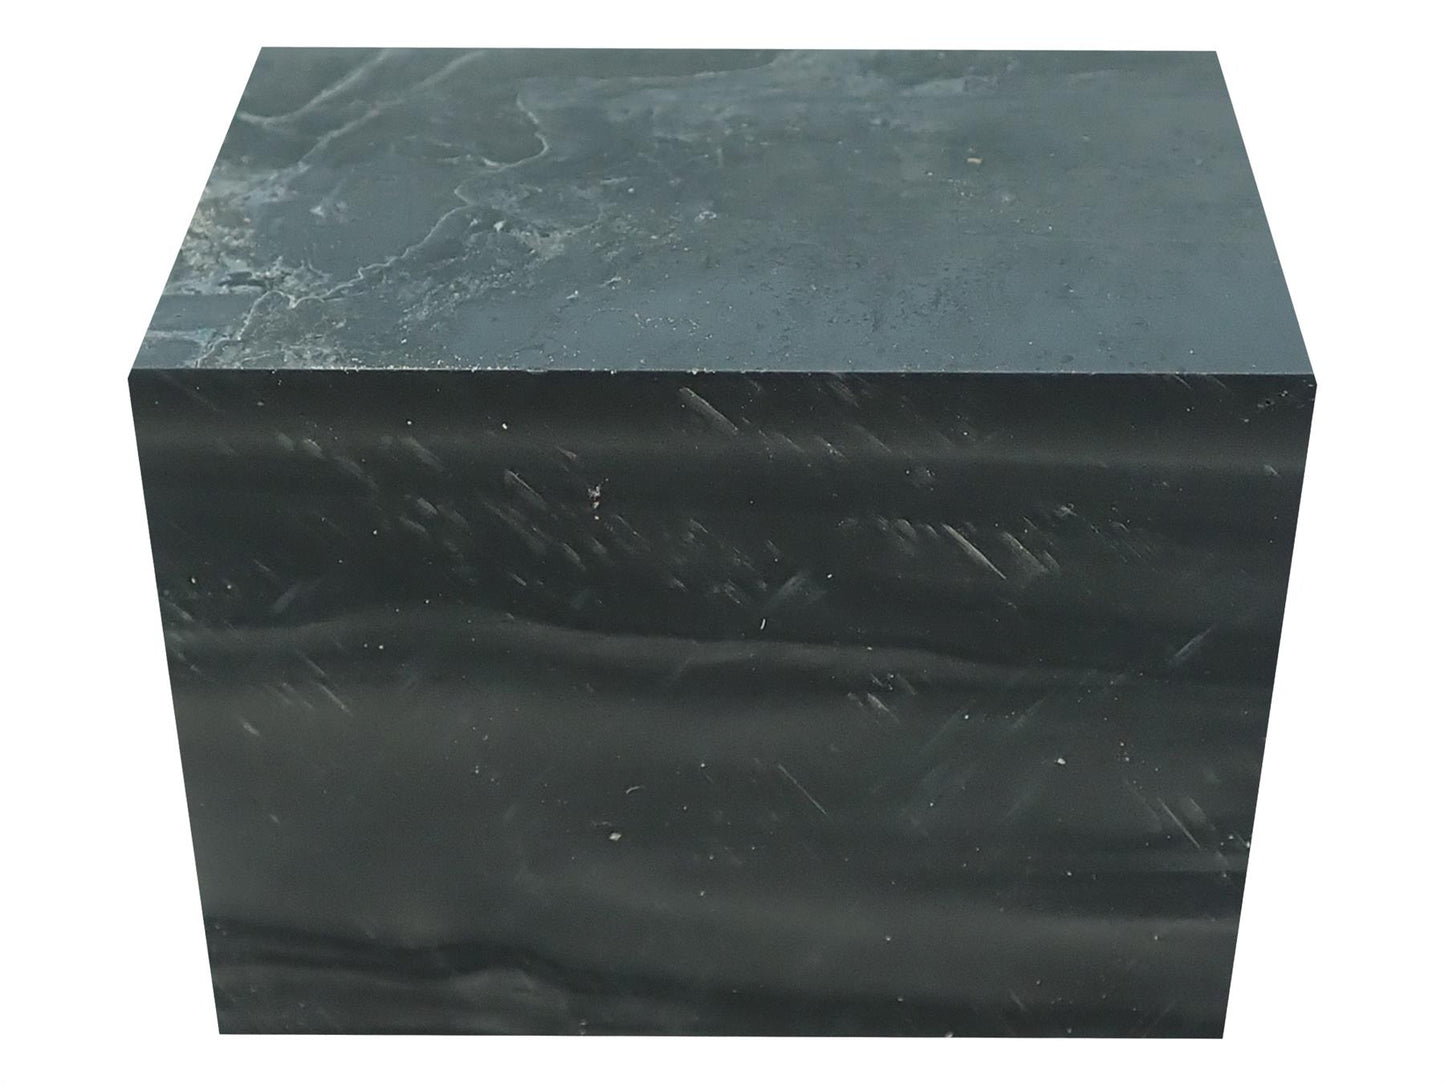 Turners' Mill Carbon Abstract Kirinite Acrylic Block - 64x42x42mm (2.5x1.65x1.65")